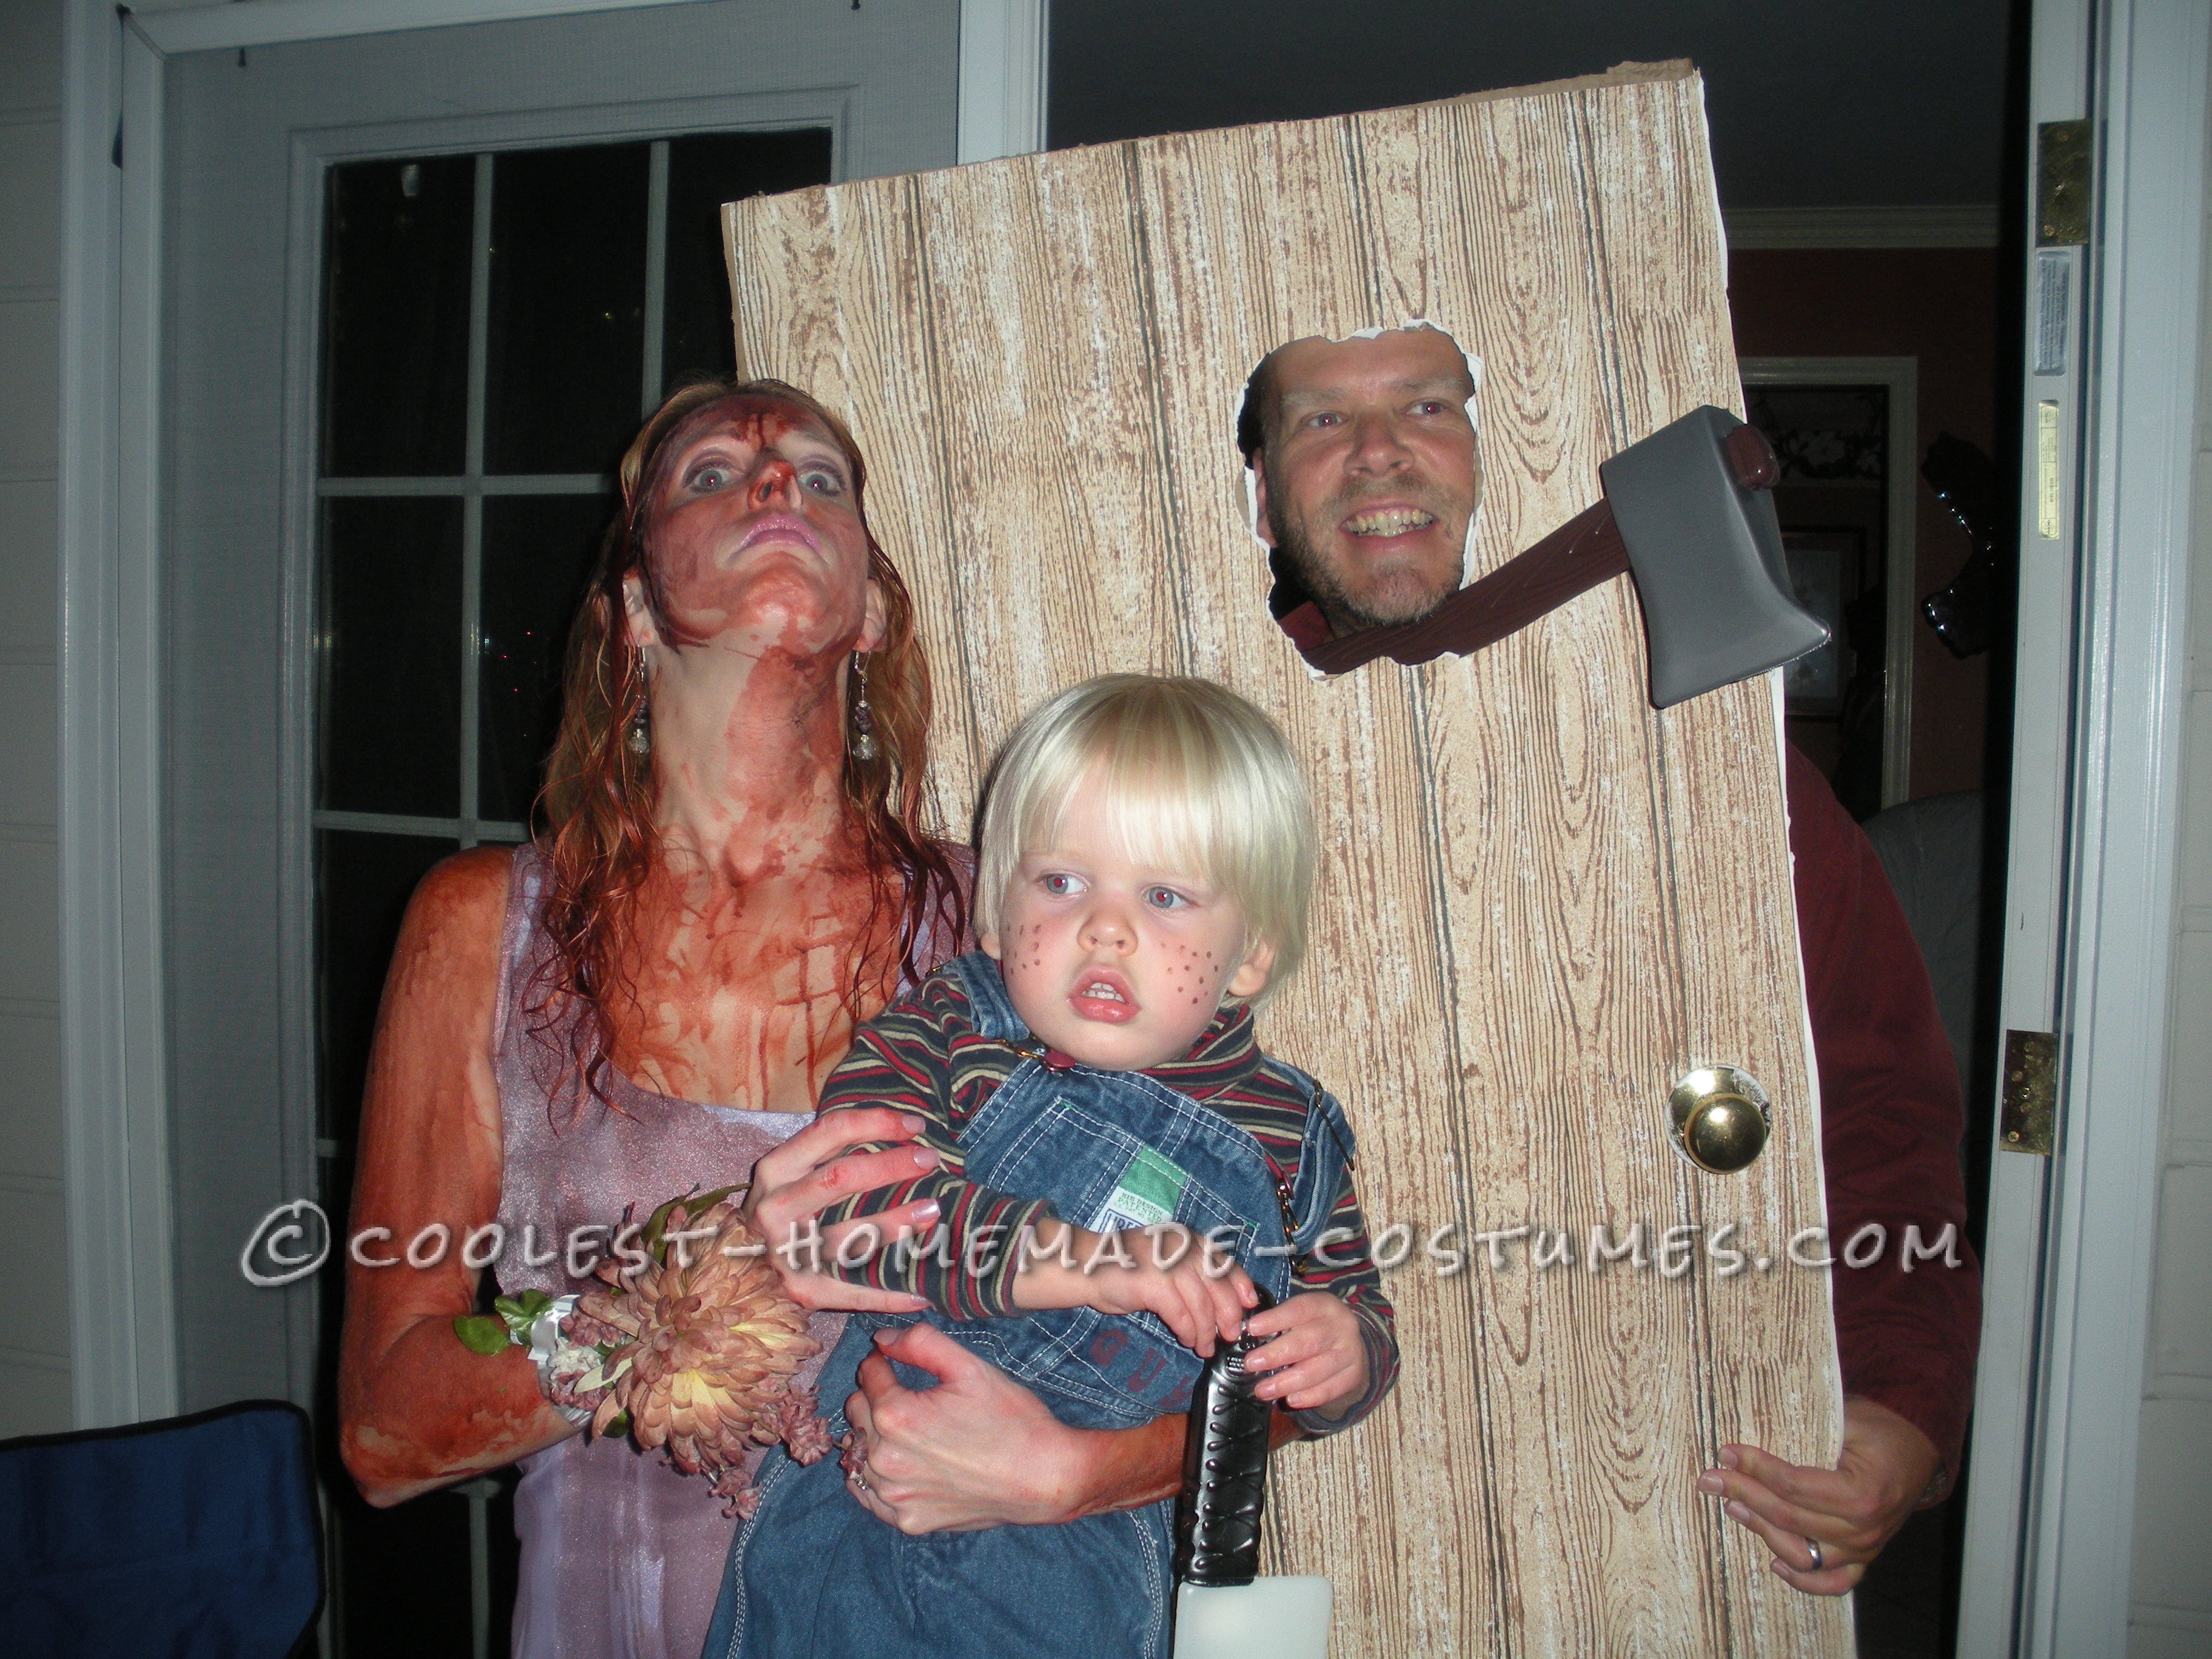 Homemade Horror Family Costume